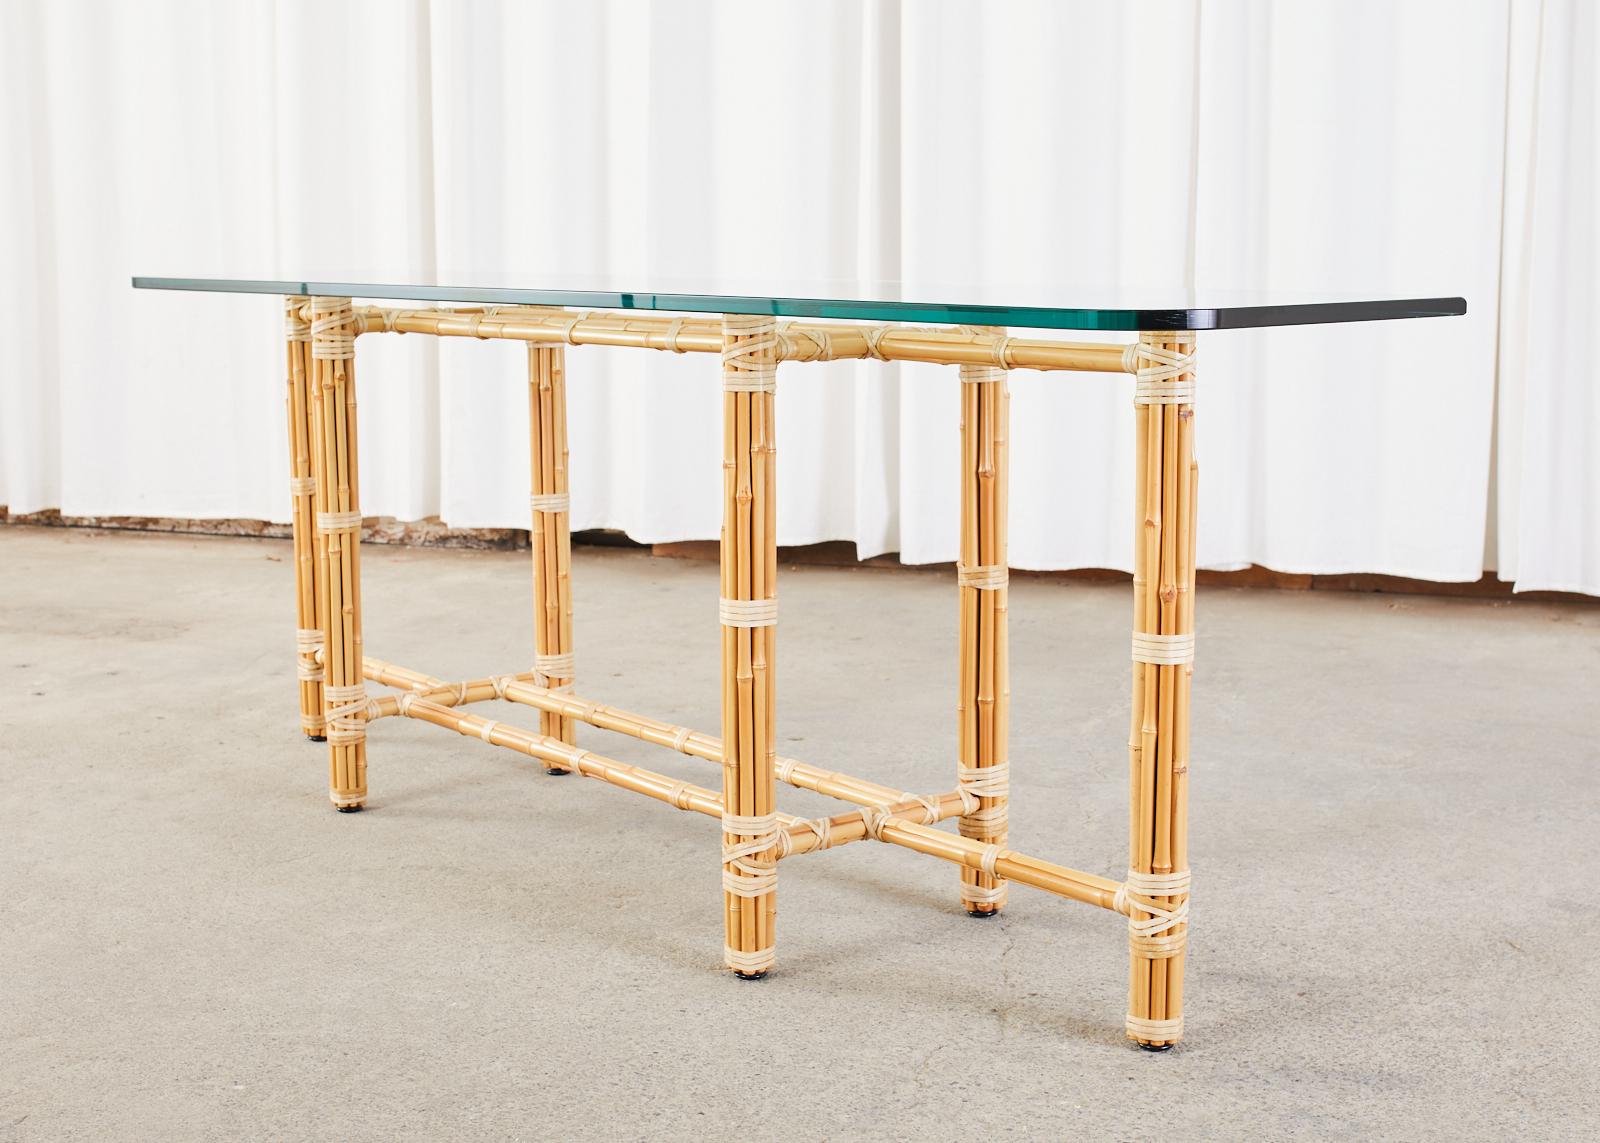 Länglicher McGuire Konsolentisch oder Sofatisch im kalifornischen Stil der organischen Moderne. Der lange, rechteckige Tisch besteht aus einem Eisengestell, das mit blonden Bambusstäben umwickelt ist, die mit Lederschnüren aus Rohhaut